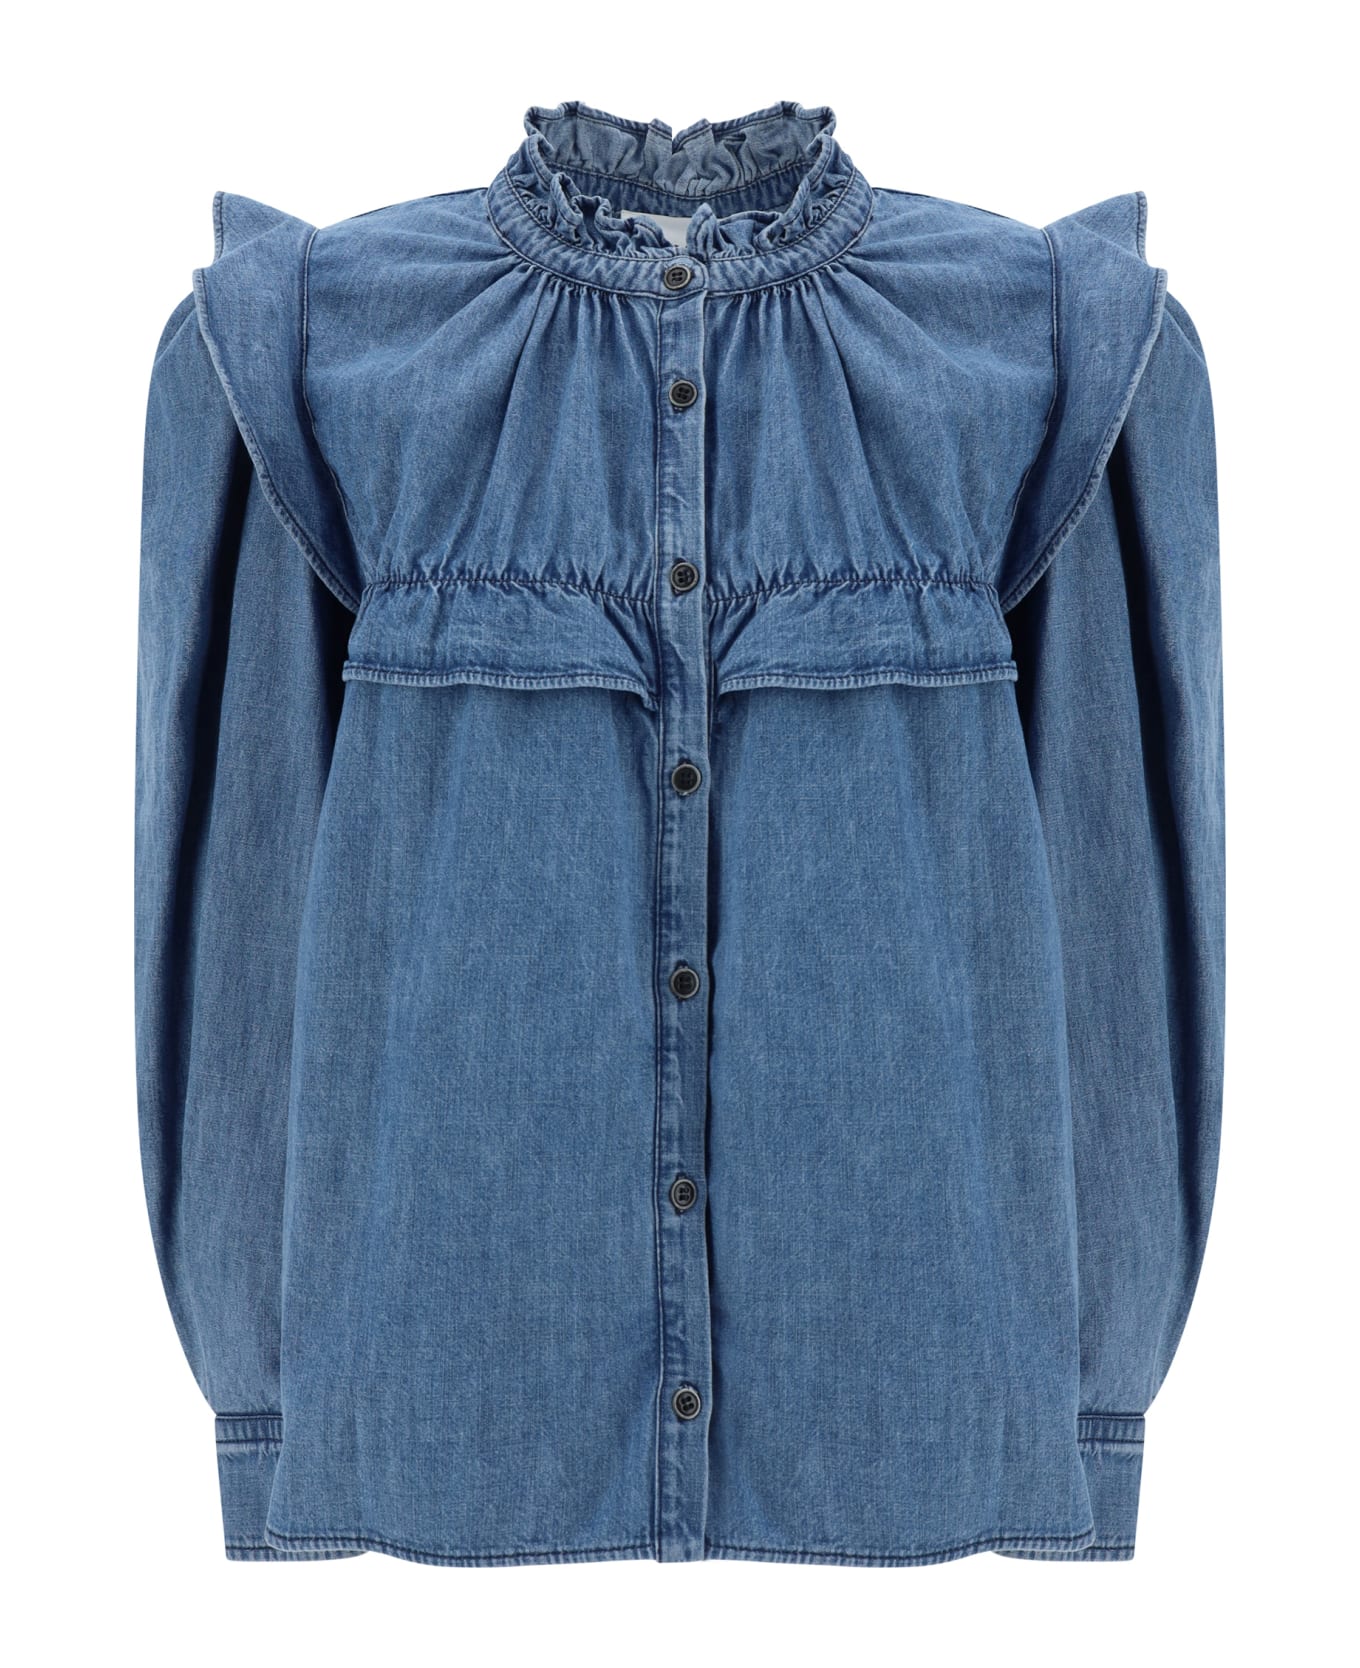 Marant Étoile Cotton Denim Shirt - Blue